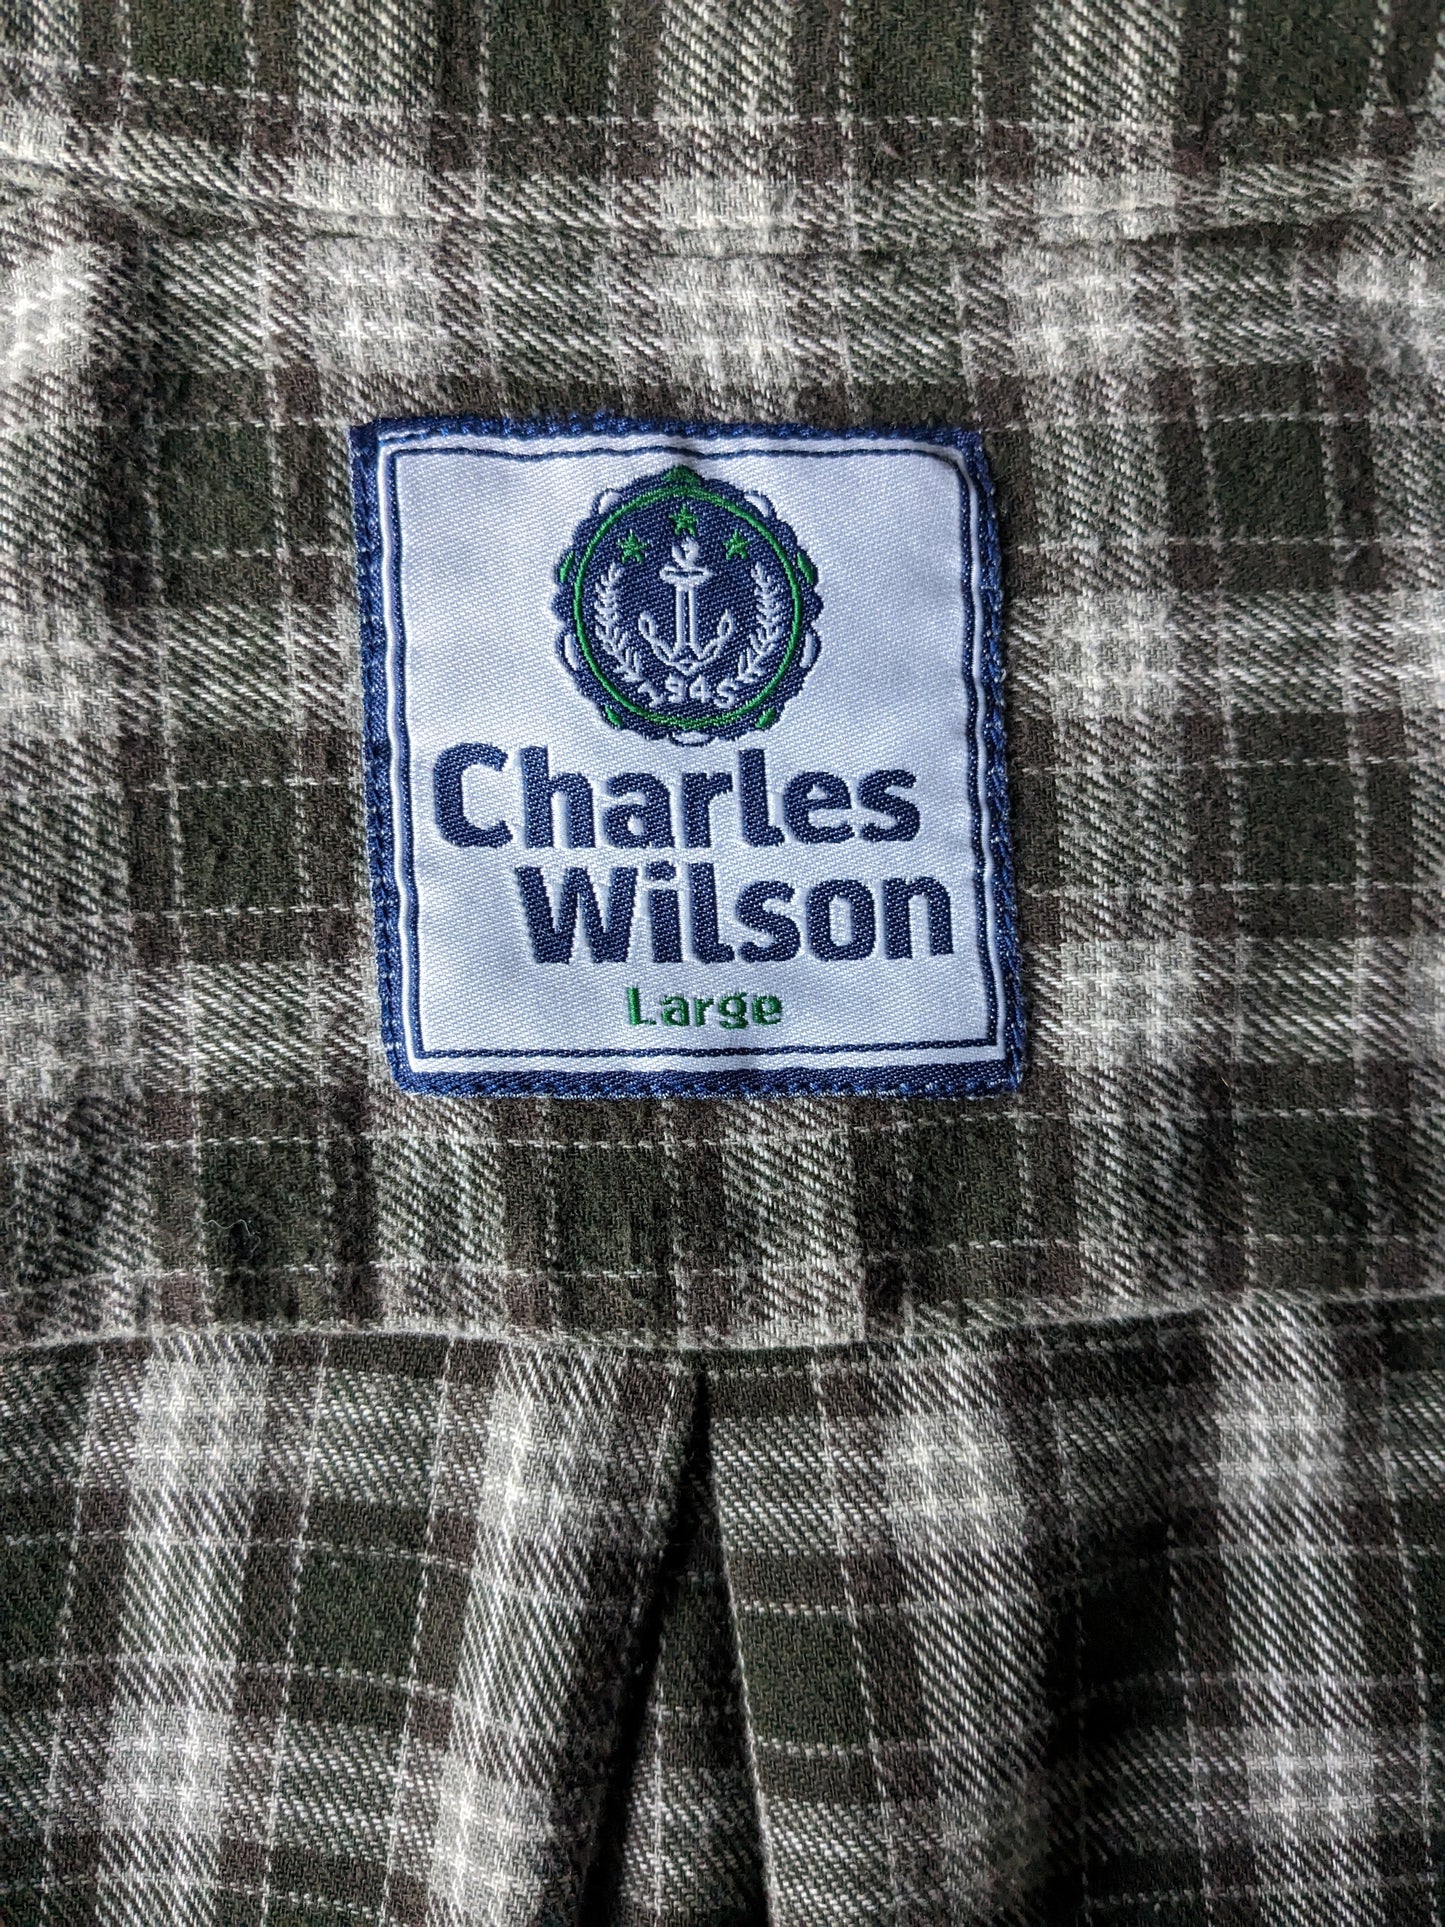 Charles Wilson Flanellen Hemd. Grüner brauner Checker. Größe L.